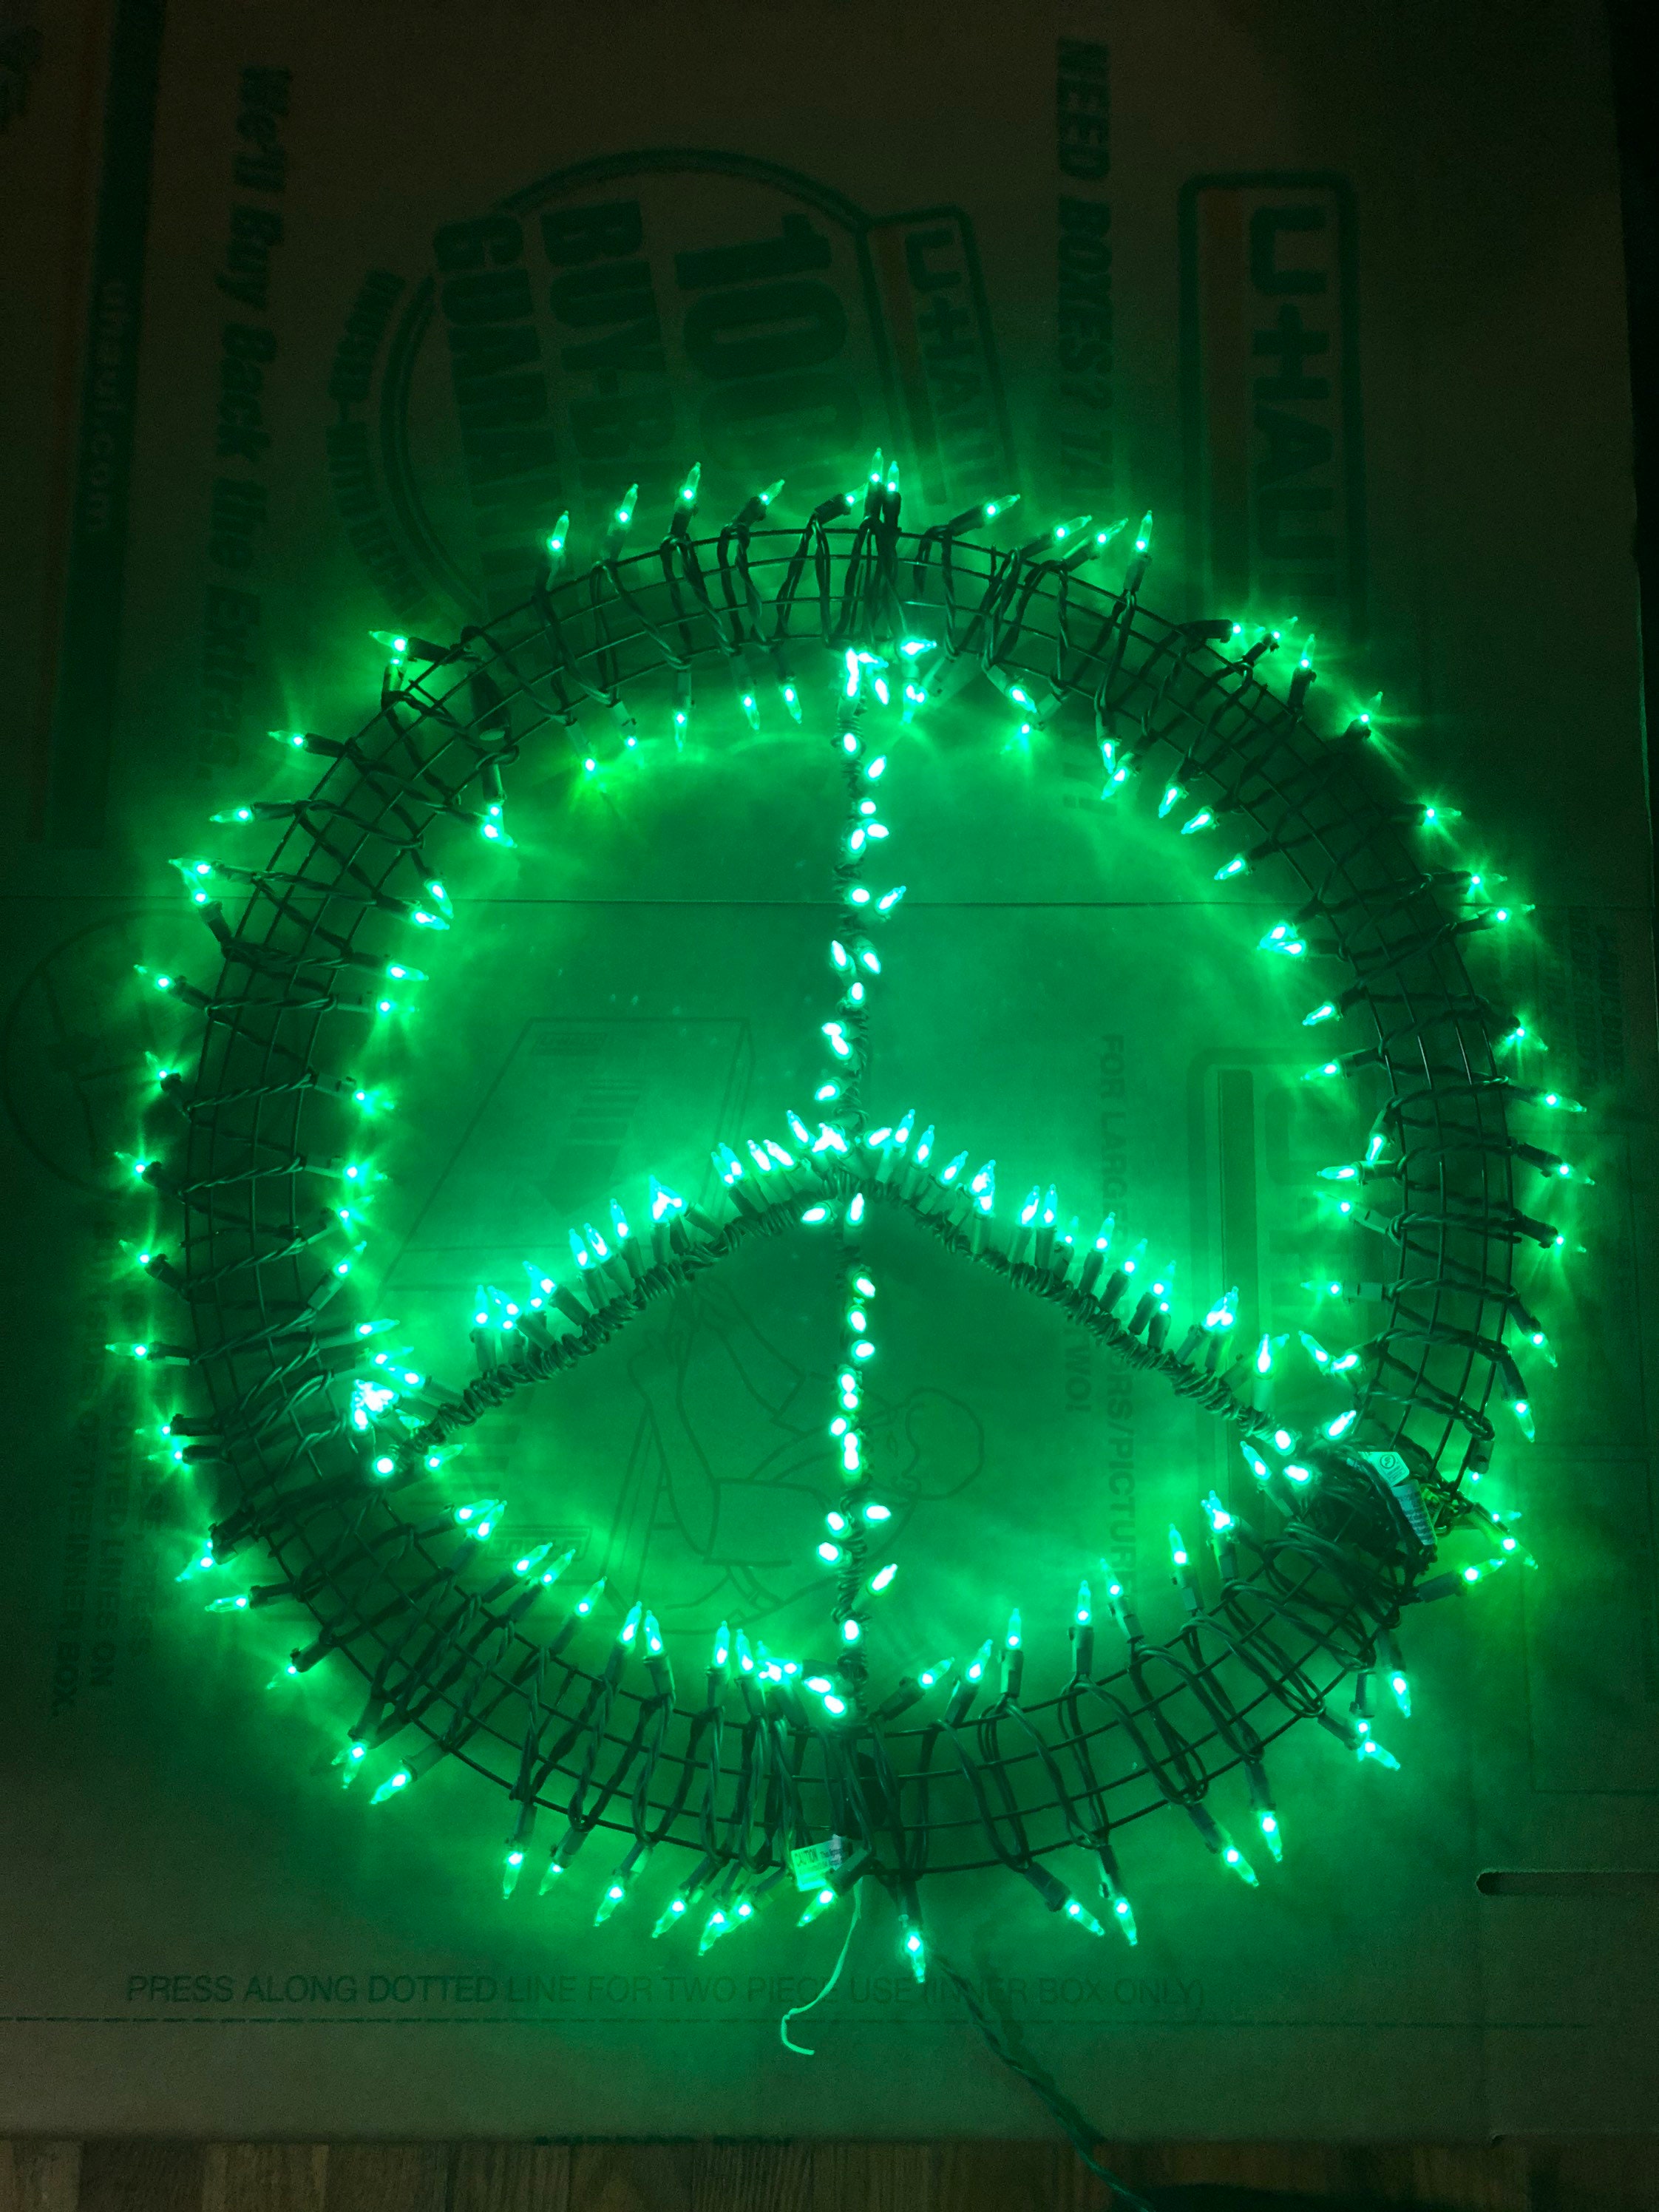 603 Peace Sign Lights Bilder und Fotos - Getty Images